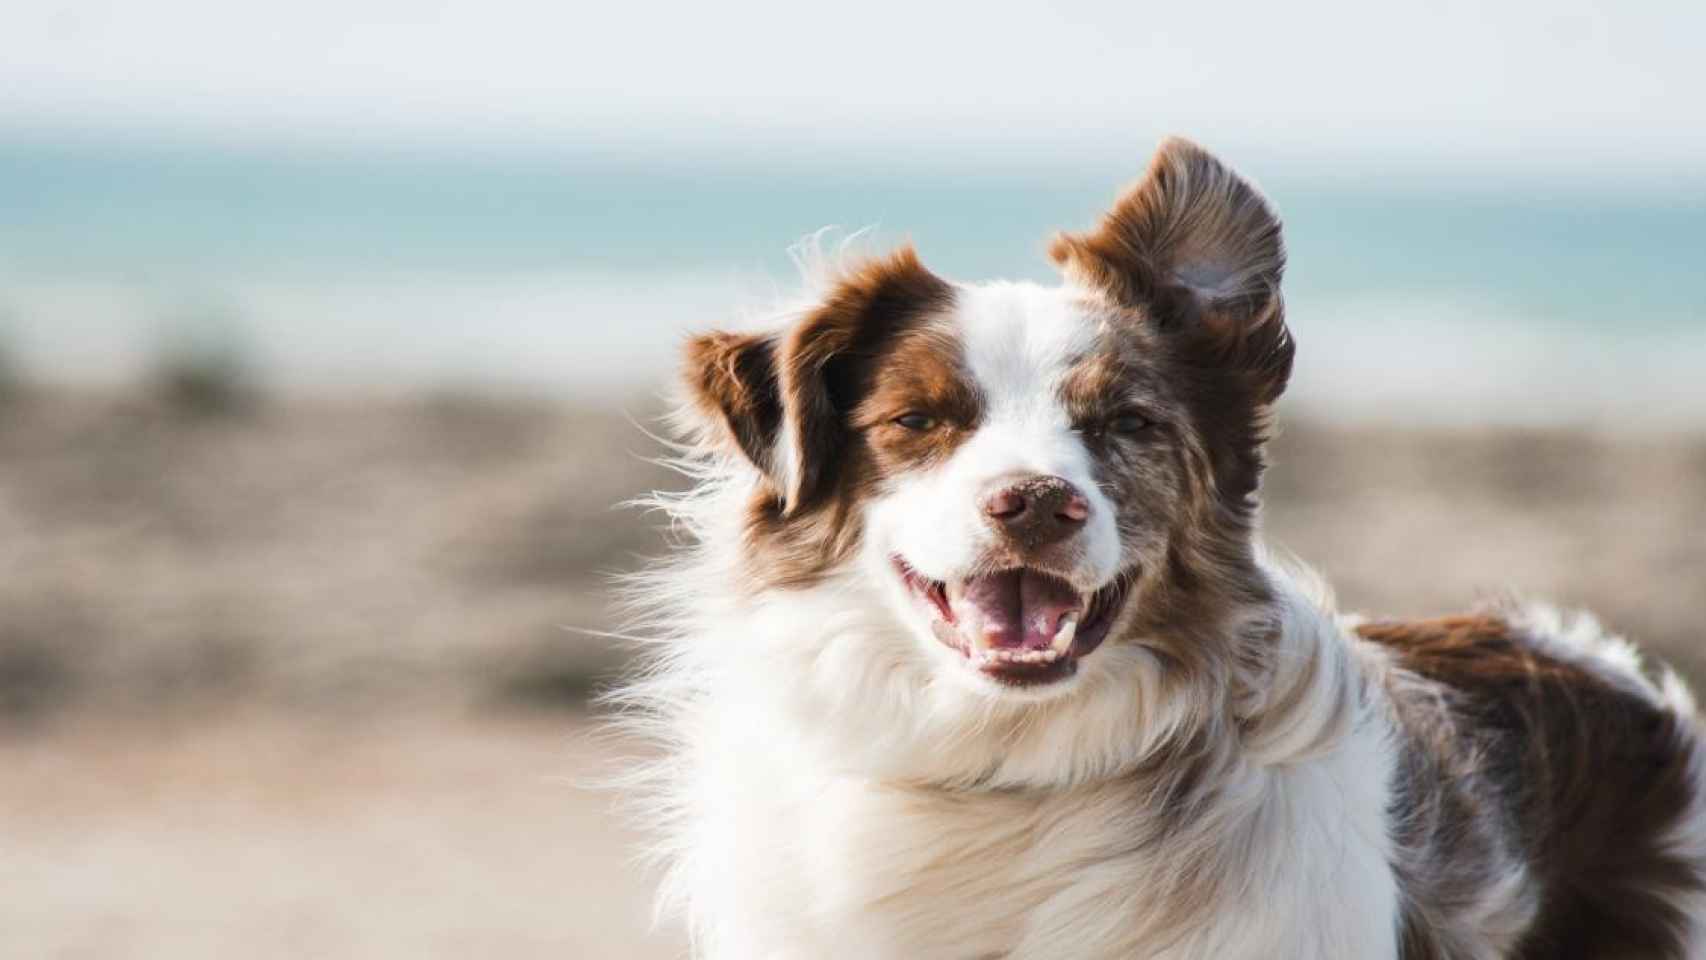 Un perro, mascota que puede ser adoptada gracias a la app AdoptaMe / Pauline Loroy en UNSPLASH